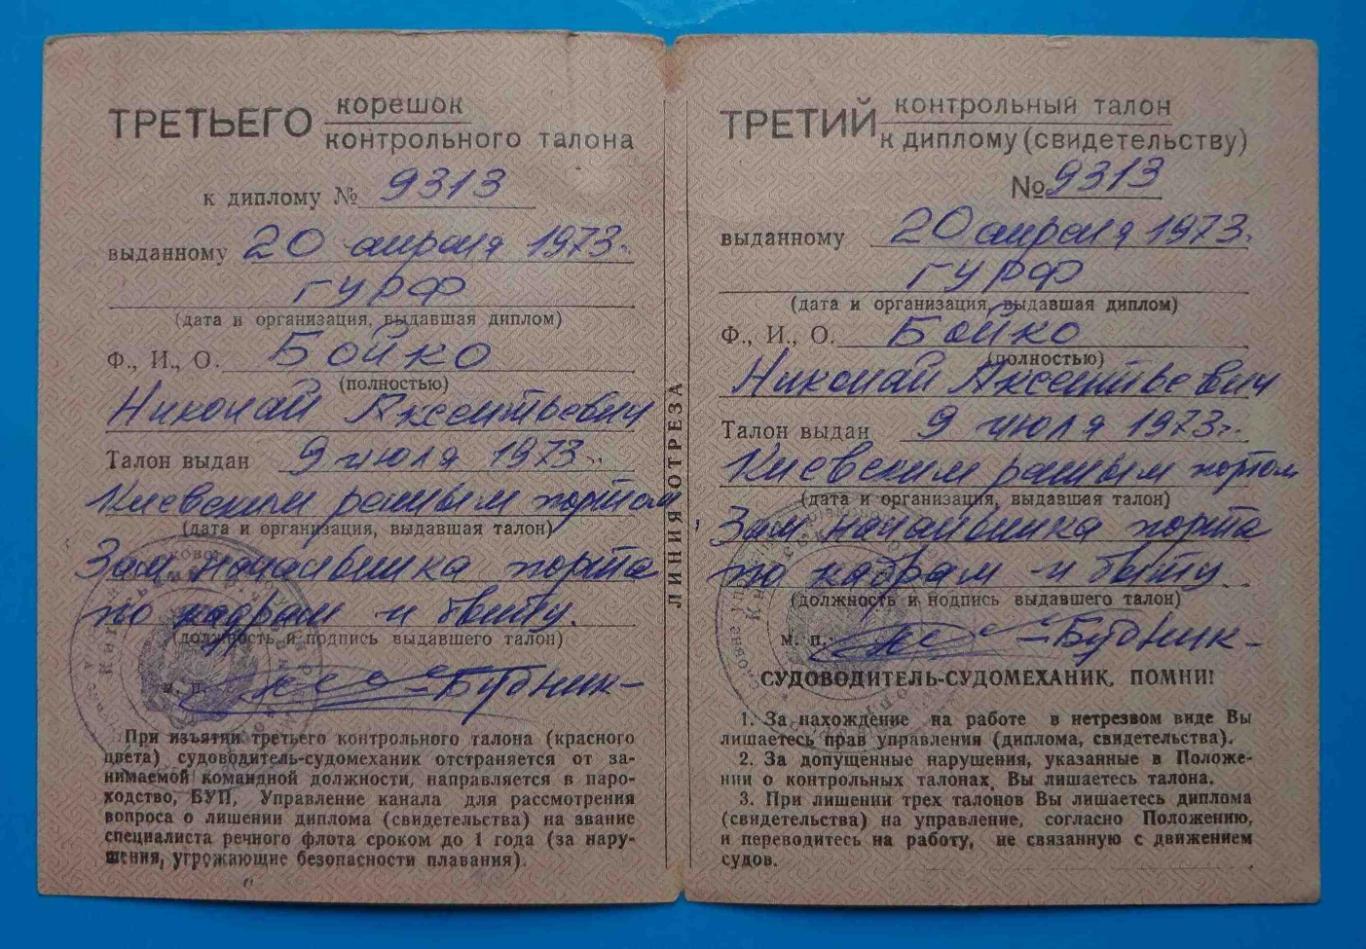 Дипломы судомеханика и судоводителя с талонами Речной флот УССР 1973 4